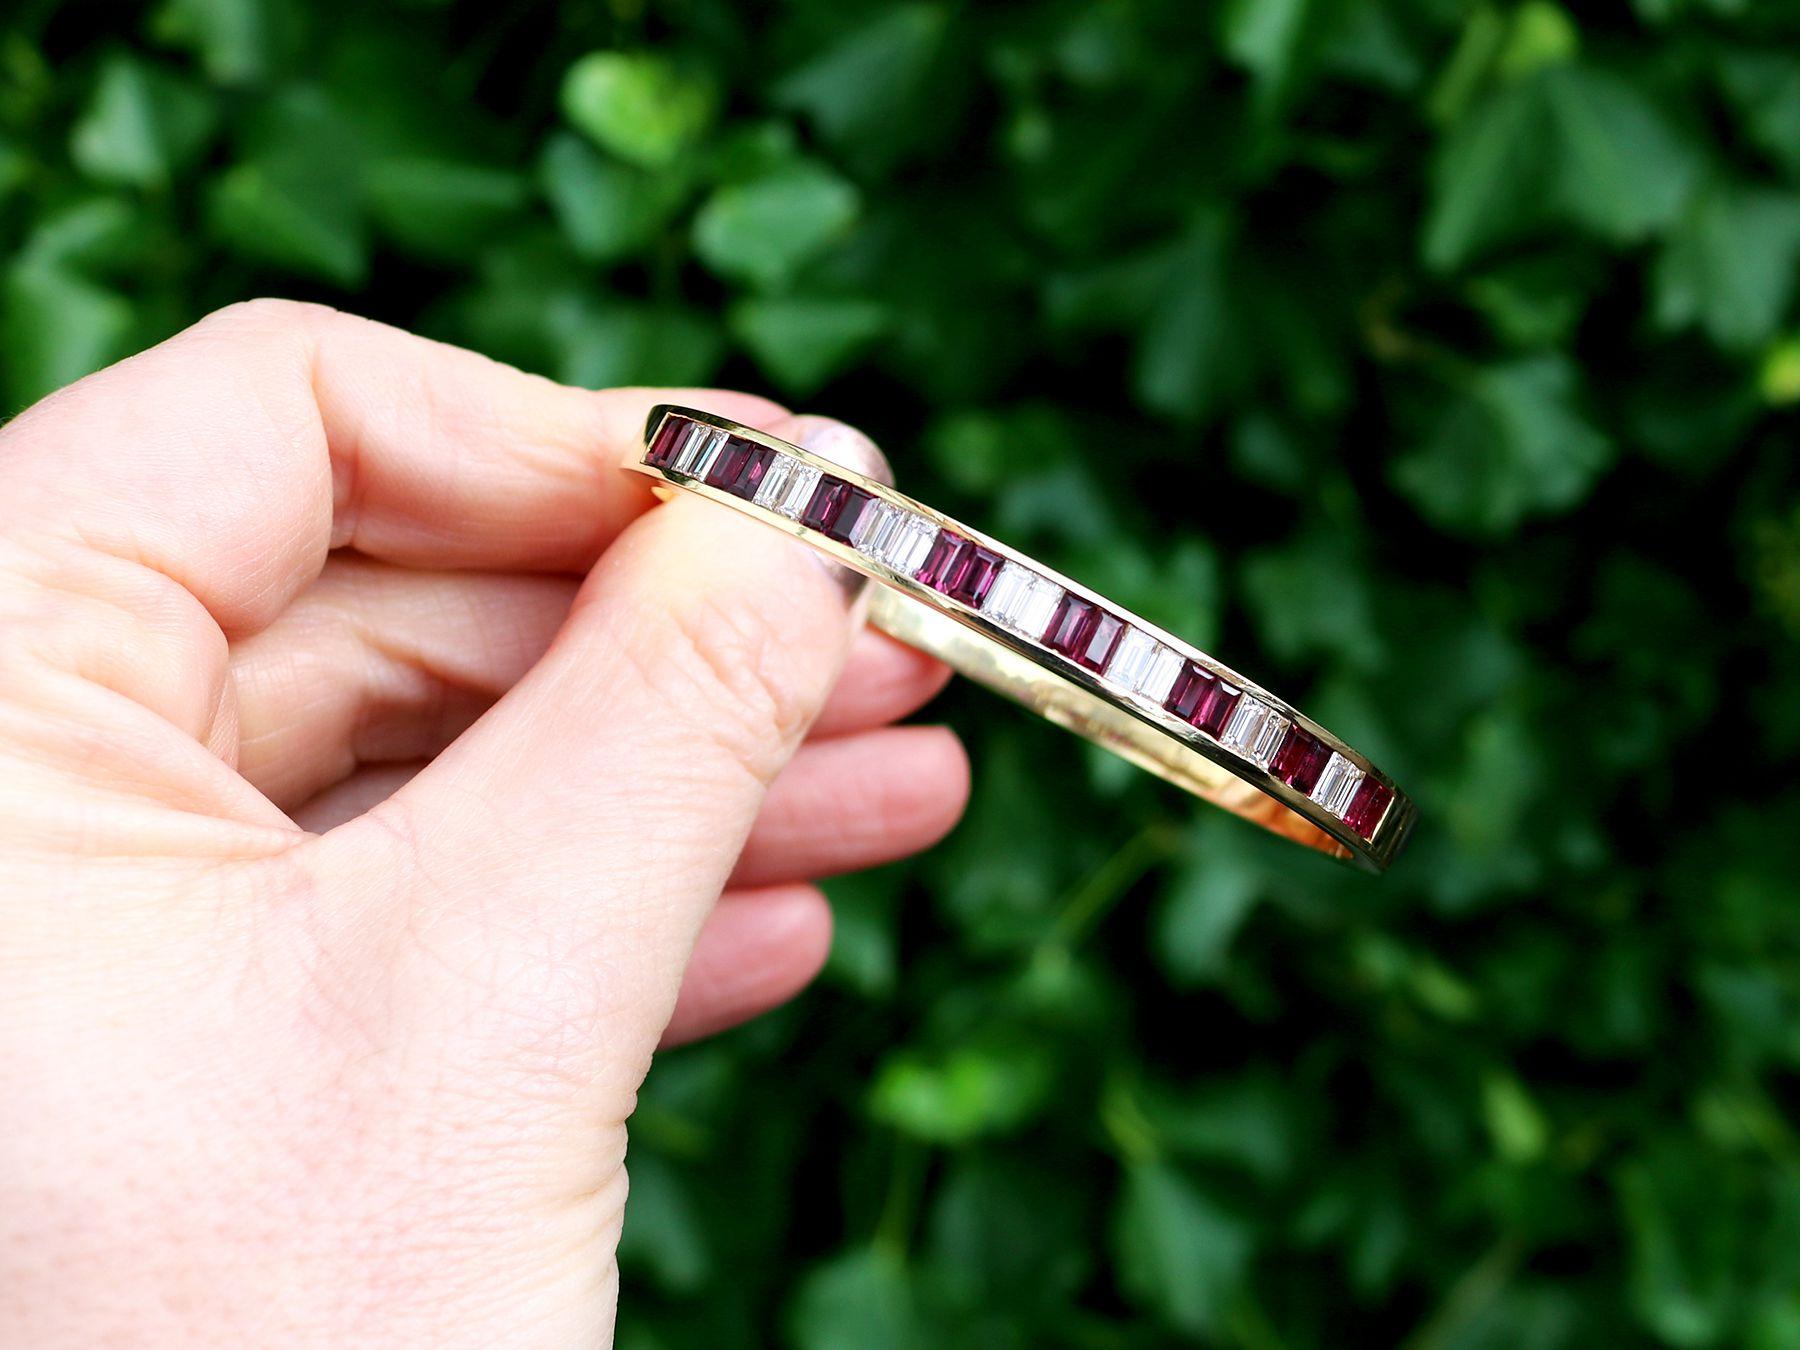 Ce bracelet exceptionnel, fin et impressionnant en rubis et diamants a été réalisé en or jaune 18 carats.

Le bracelet présente une monture simple ornée de huit paires de rubis de taille baguette sertis en canal en alternance avec six paires de